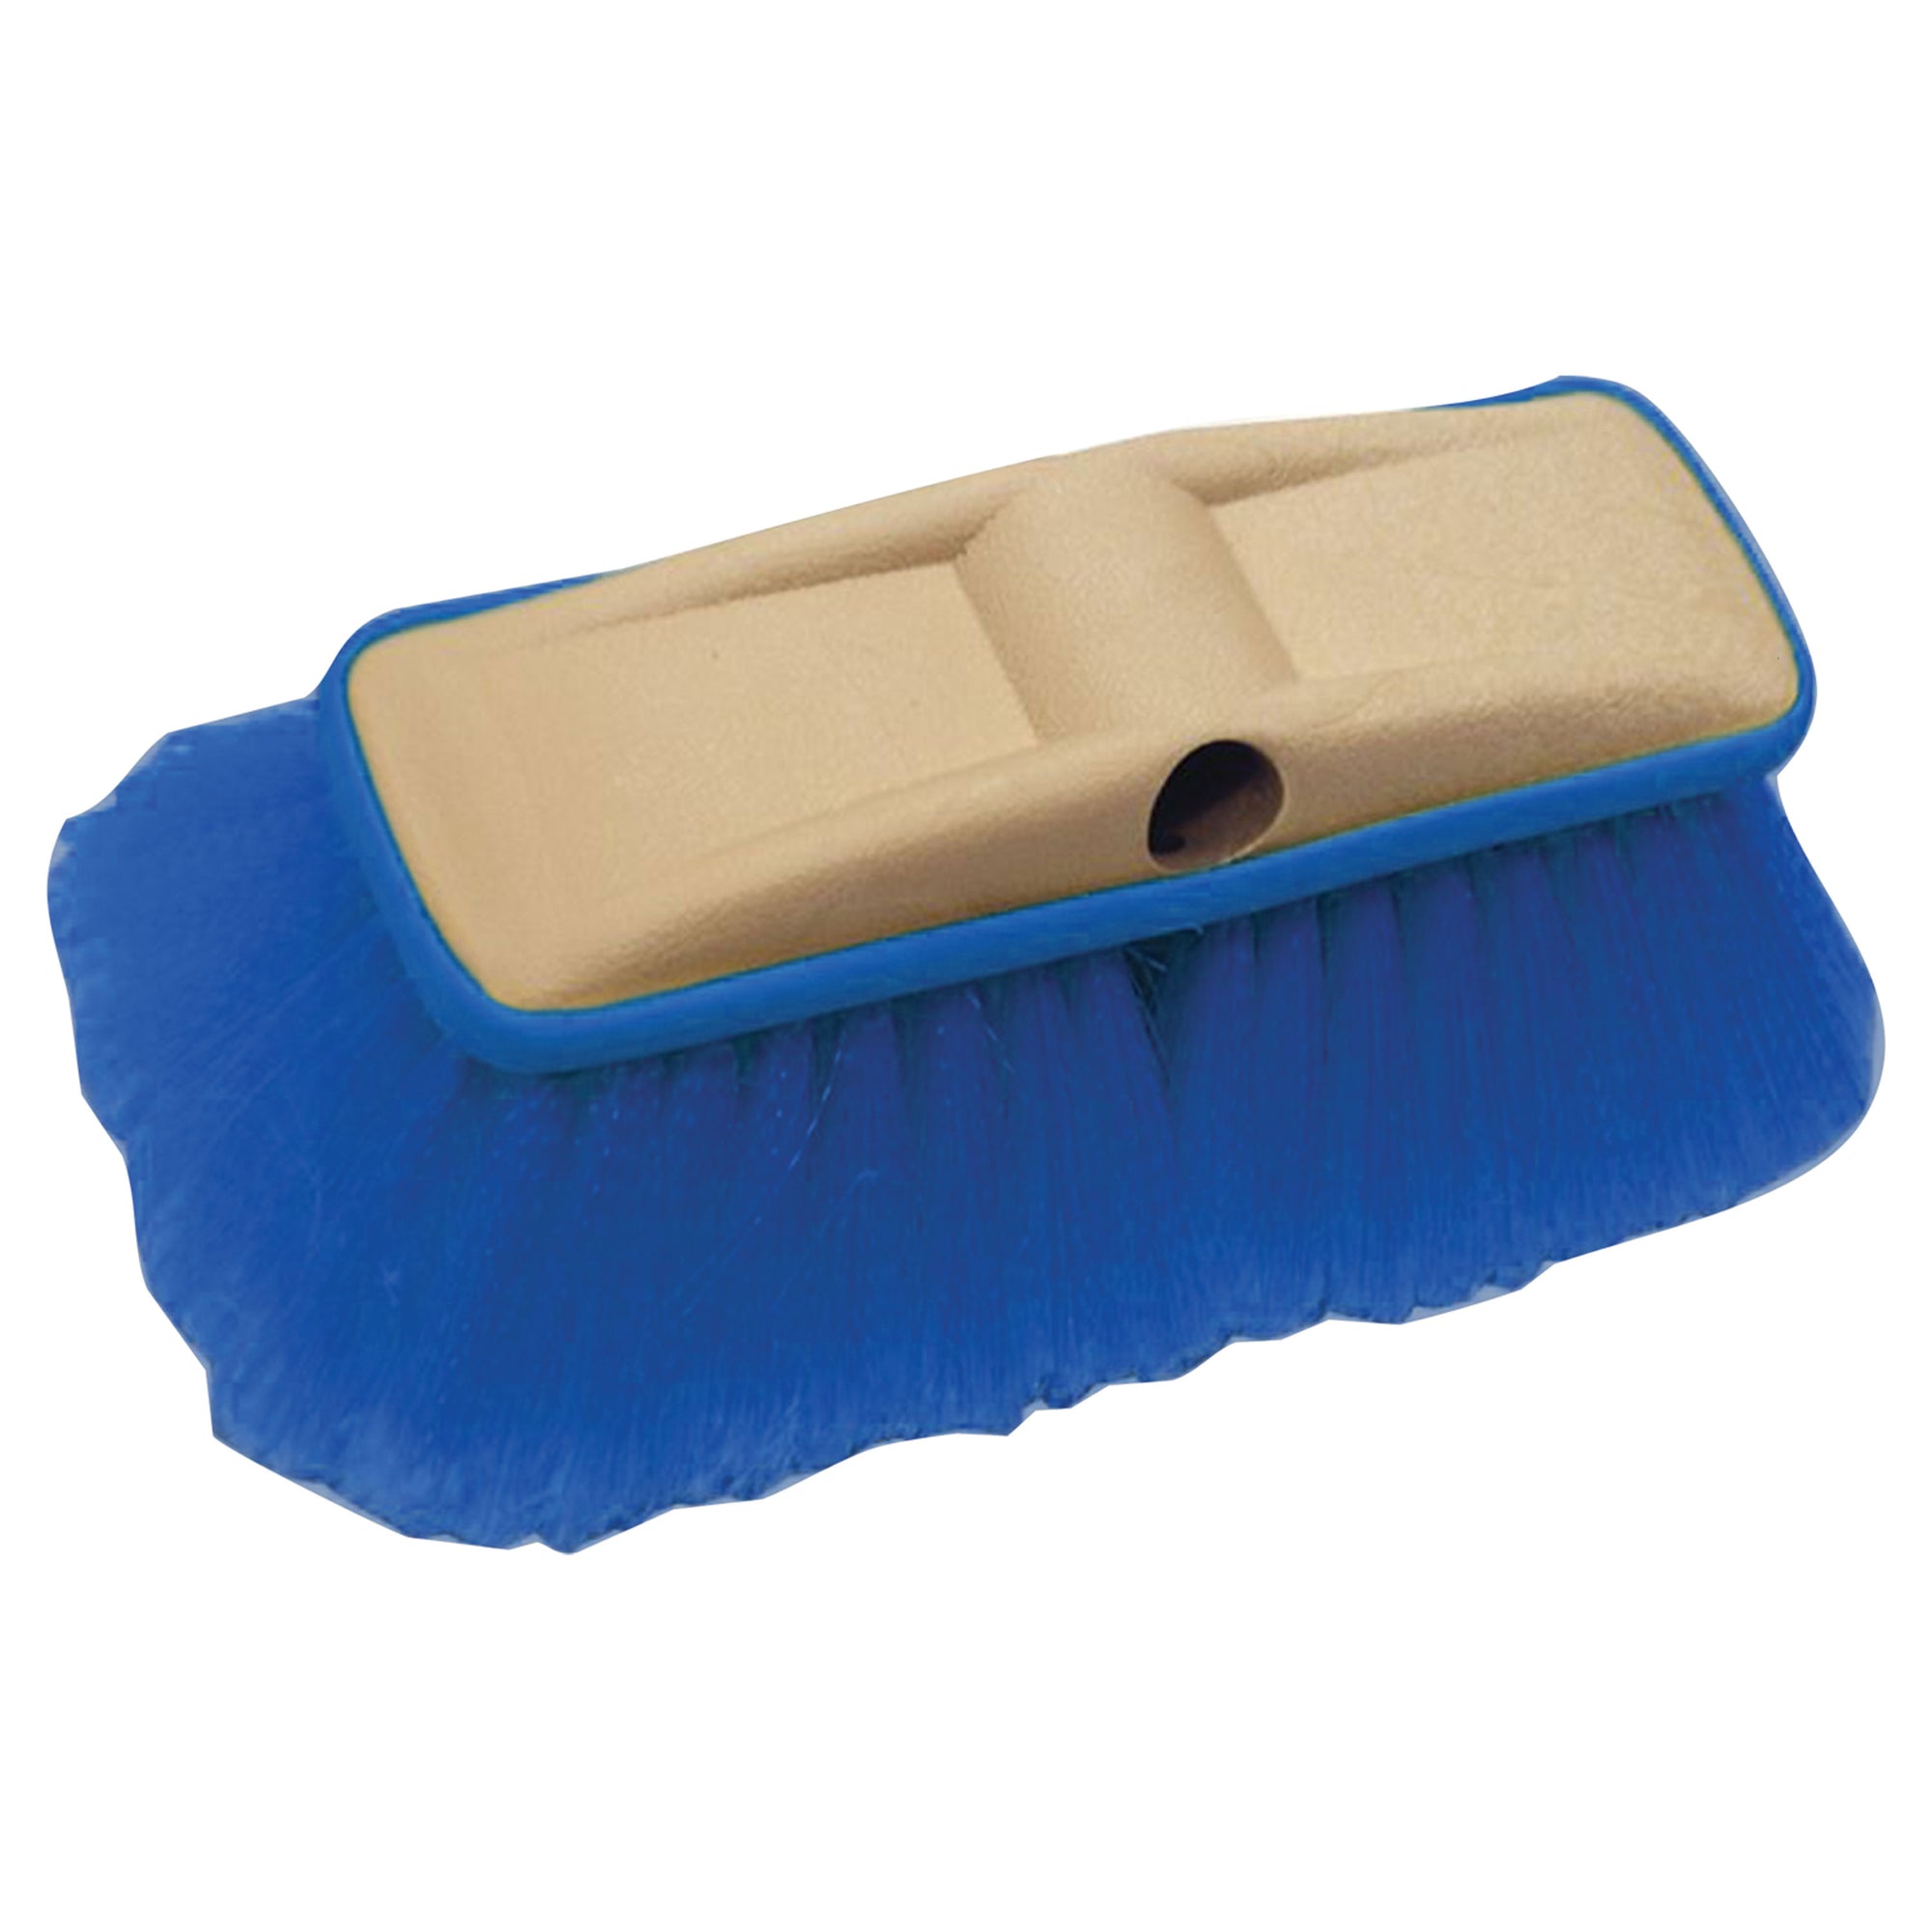 Star brite 040162 Medium Premium Wash Brush With Bumper